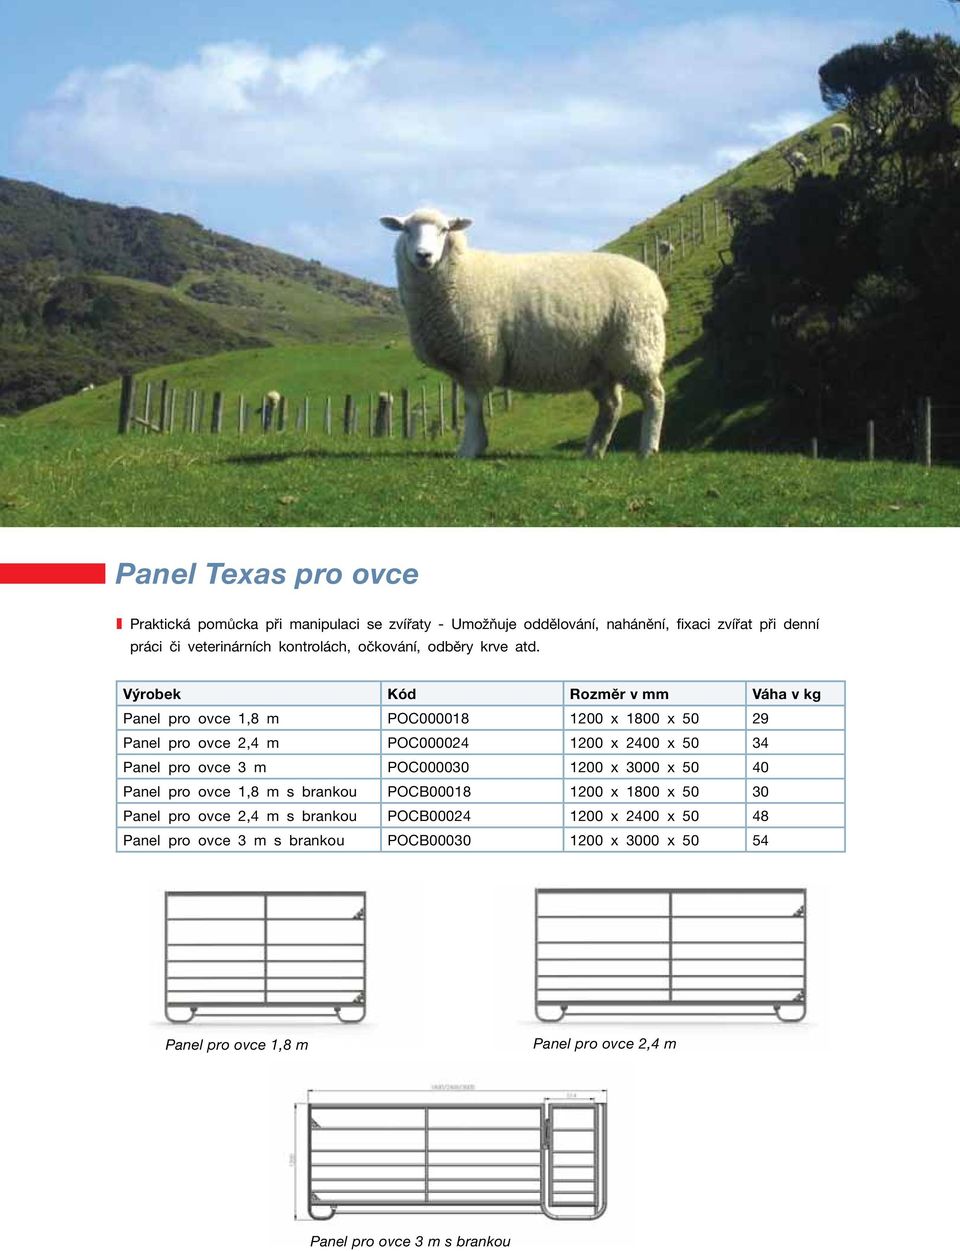 Panel pro ovce 1,8 m POC000018 1200 x 1800 x 50 29 Panel pro ovce 2,4 m POC000024 1200 x 2400 x 50 34 Panel pro ovce 3 m POC000030 1200 x 3000 x